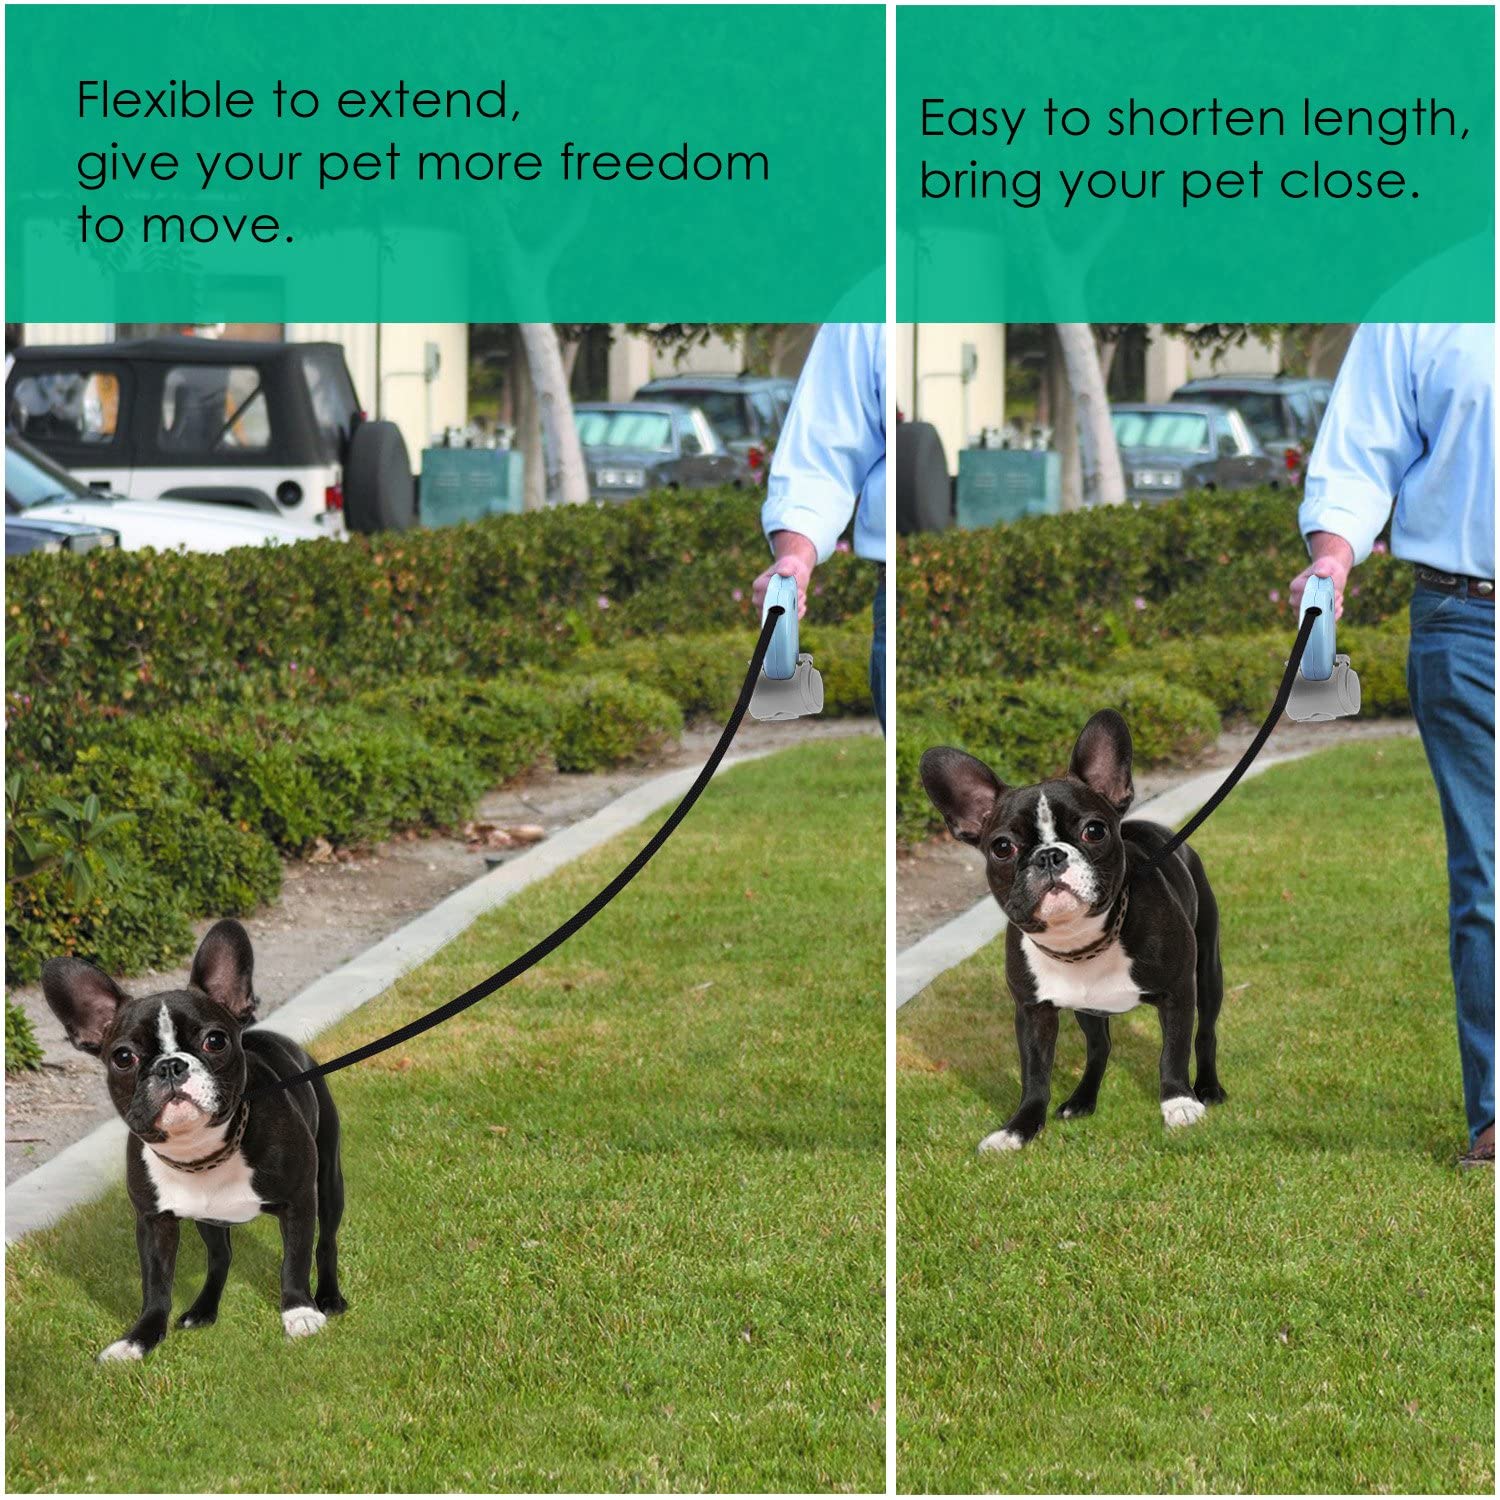  Pawaboo Correa de Perro - 5M / 16.4 FT Automático Retráctil Pet Dog Cat Leash Cuerda de Tracción con Botón de Interrupción con Bloqueo, Talla Chica, Azul 